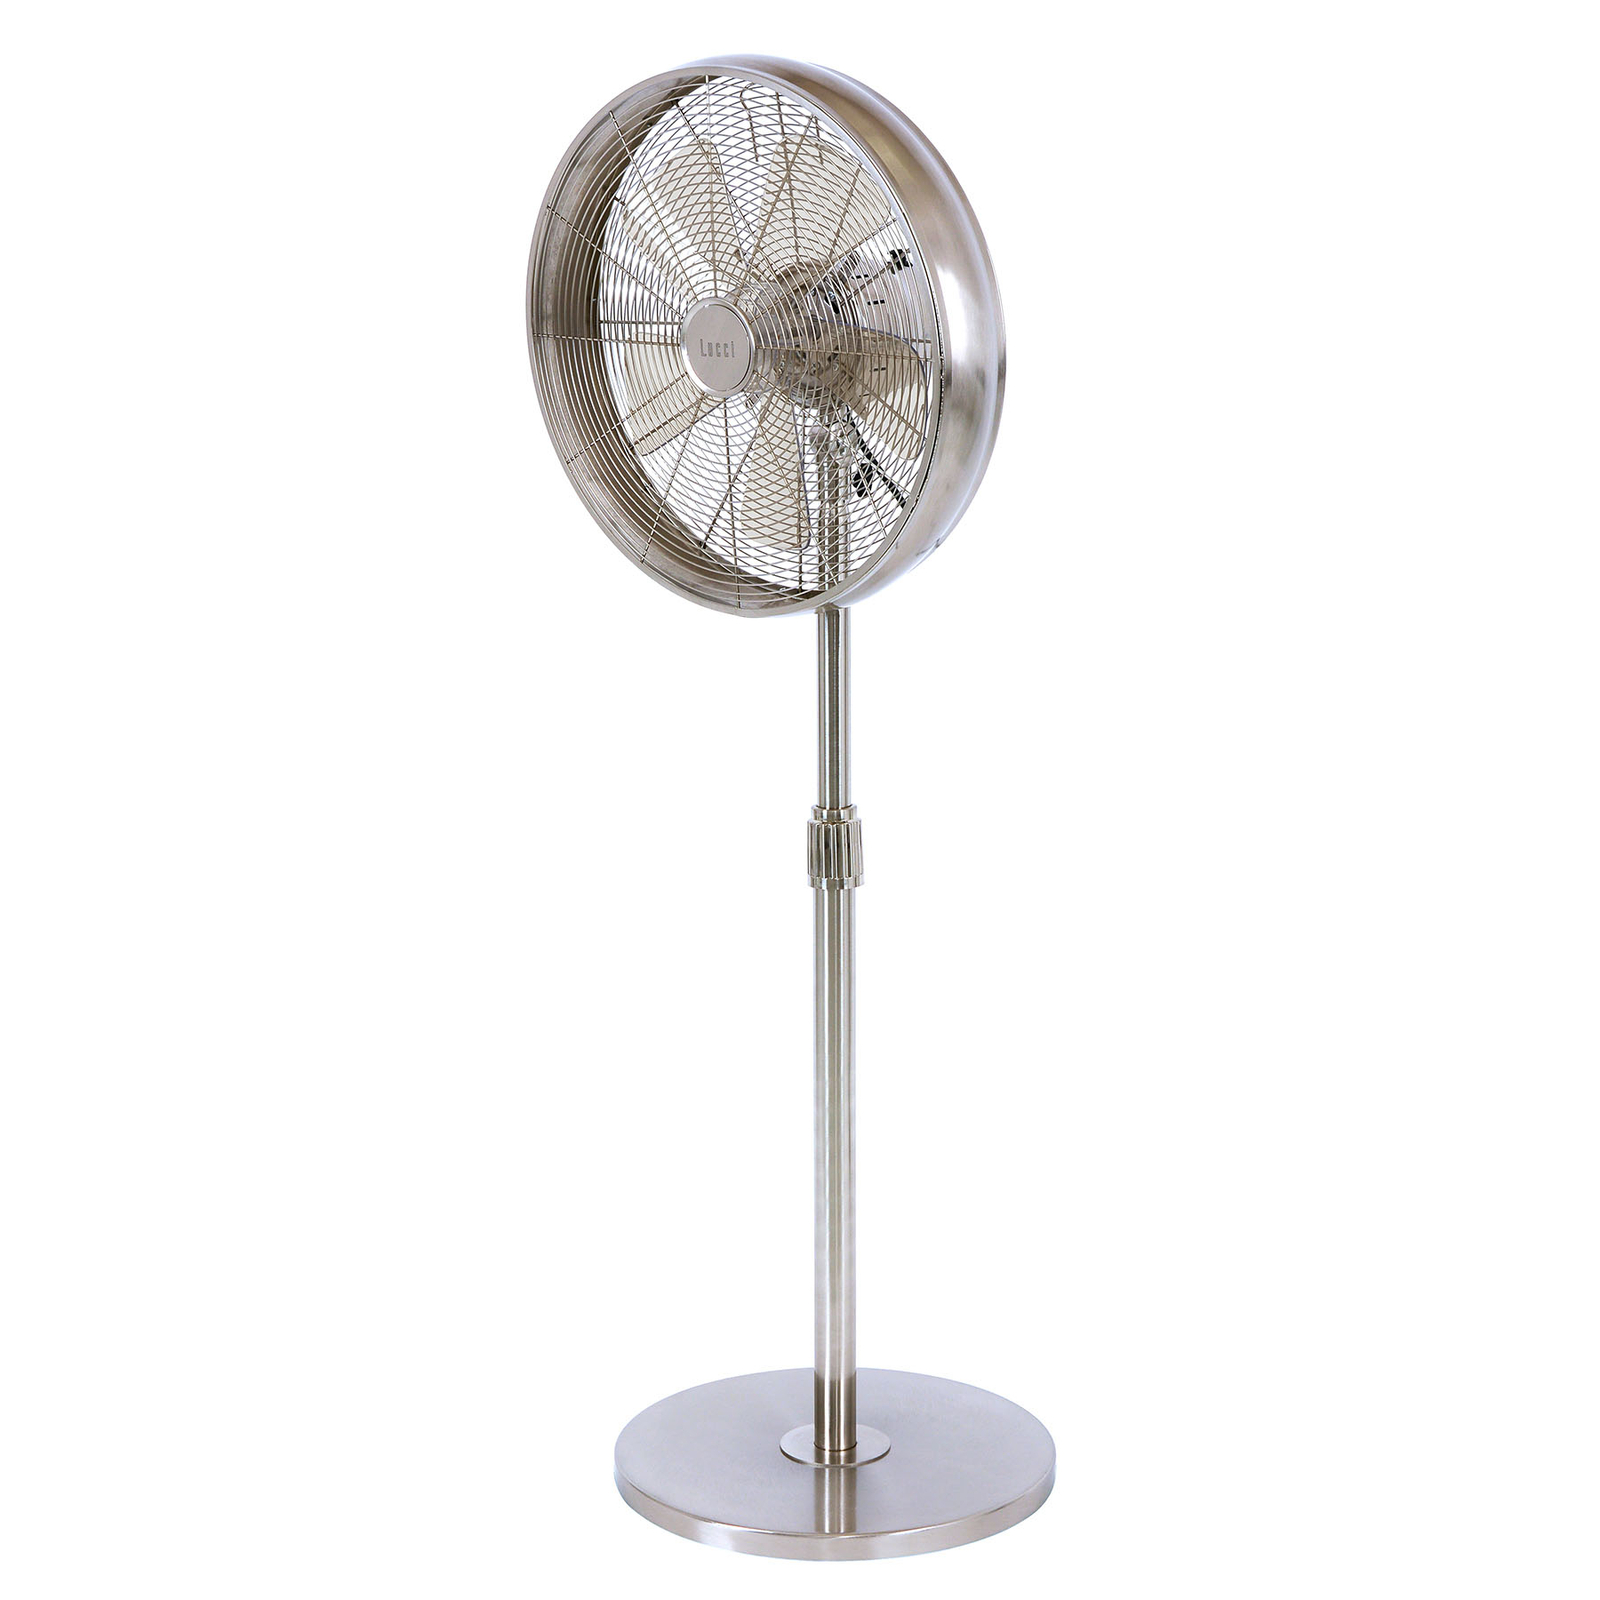 Breeze pedestal fan 122 cm, round base, chrome